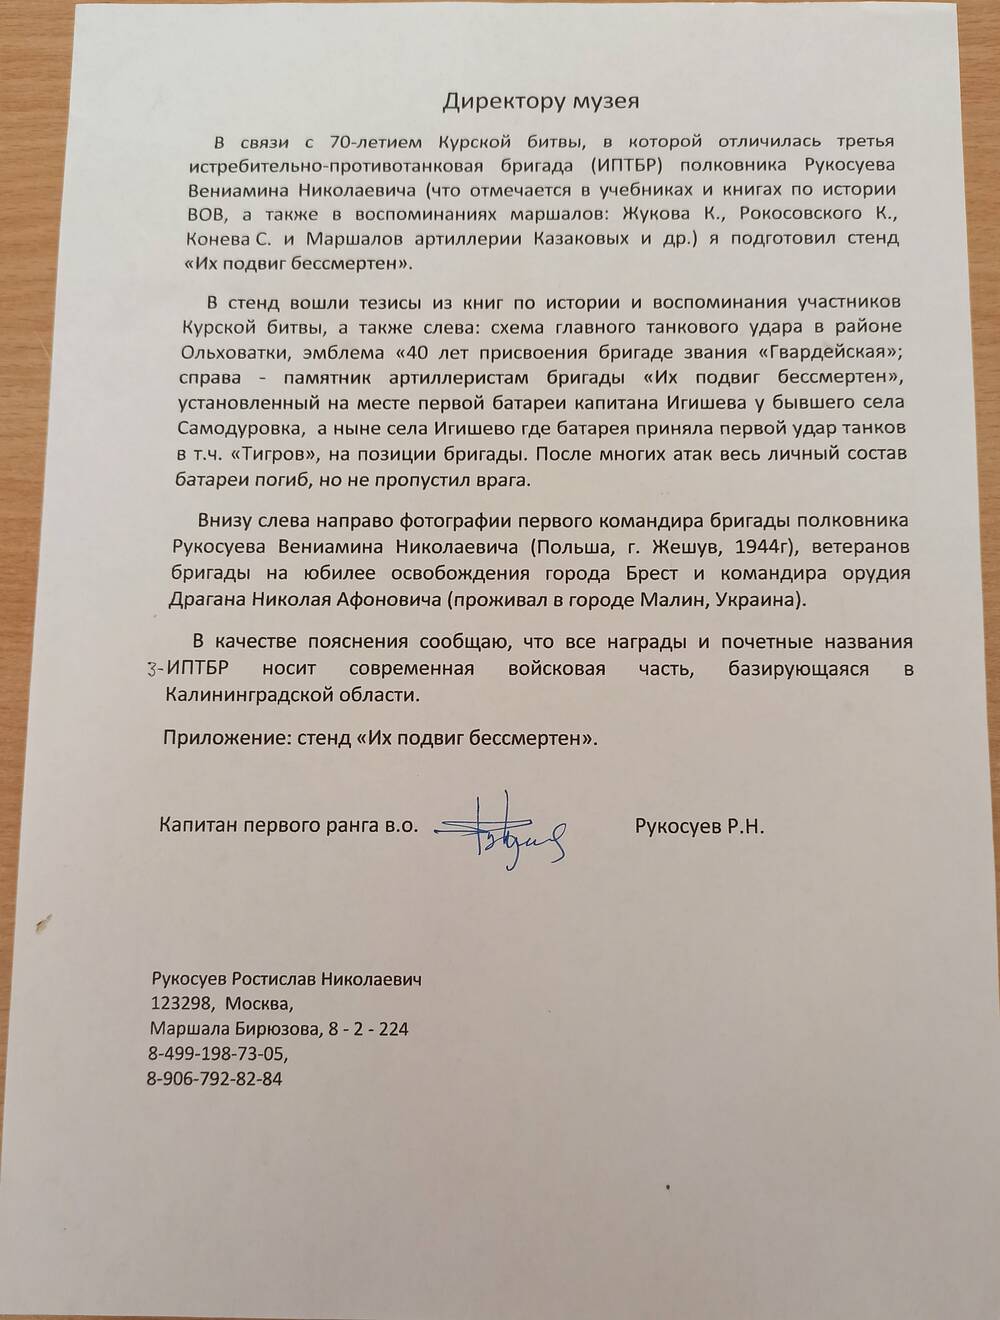 Письмо Рукосуева Ростислава Николаевича директору музея.